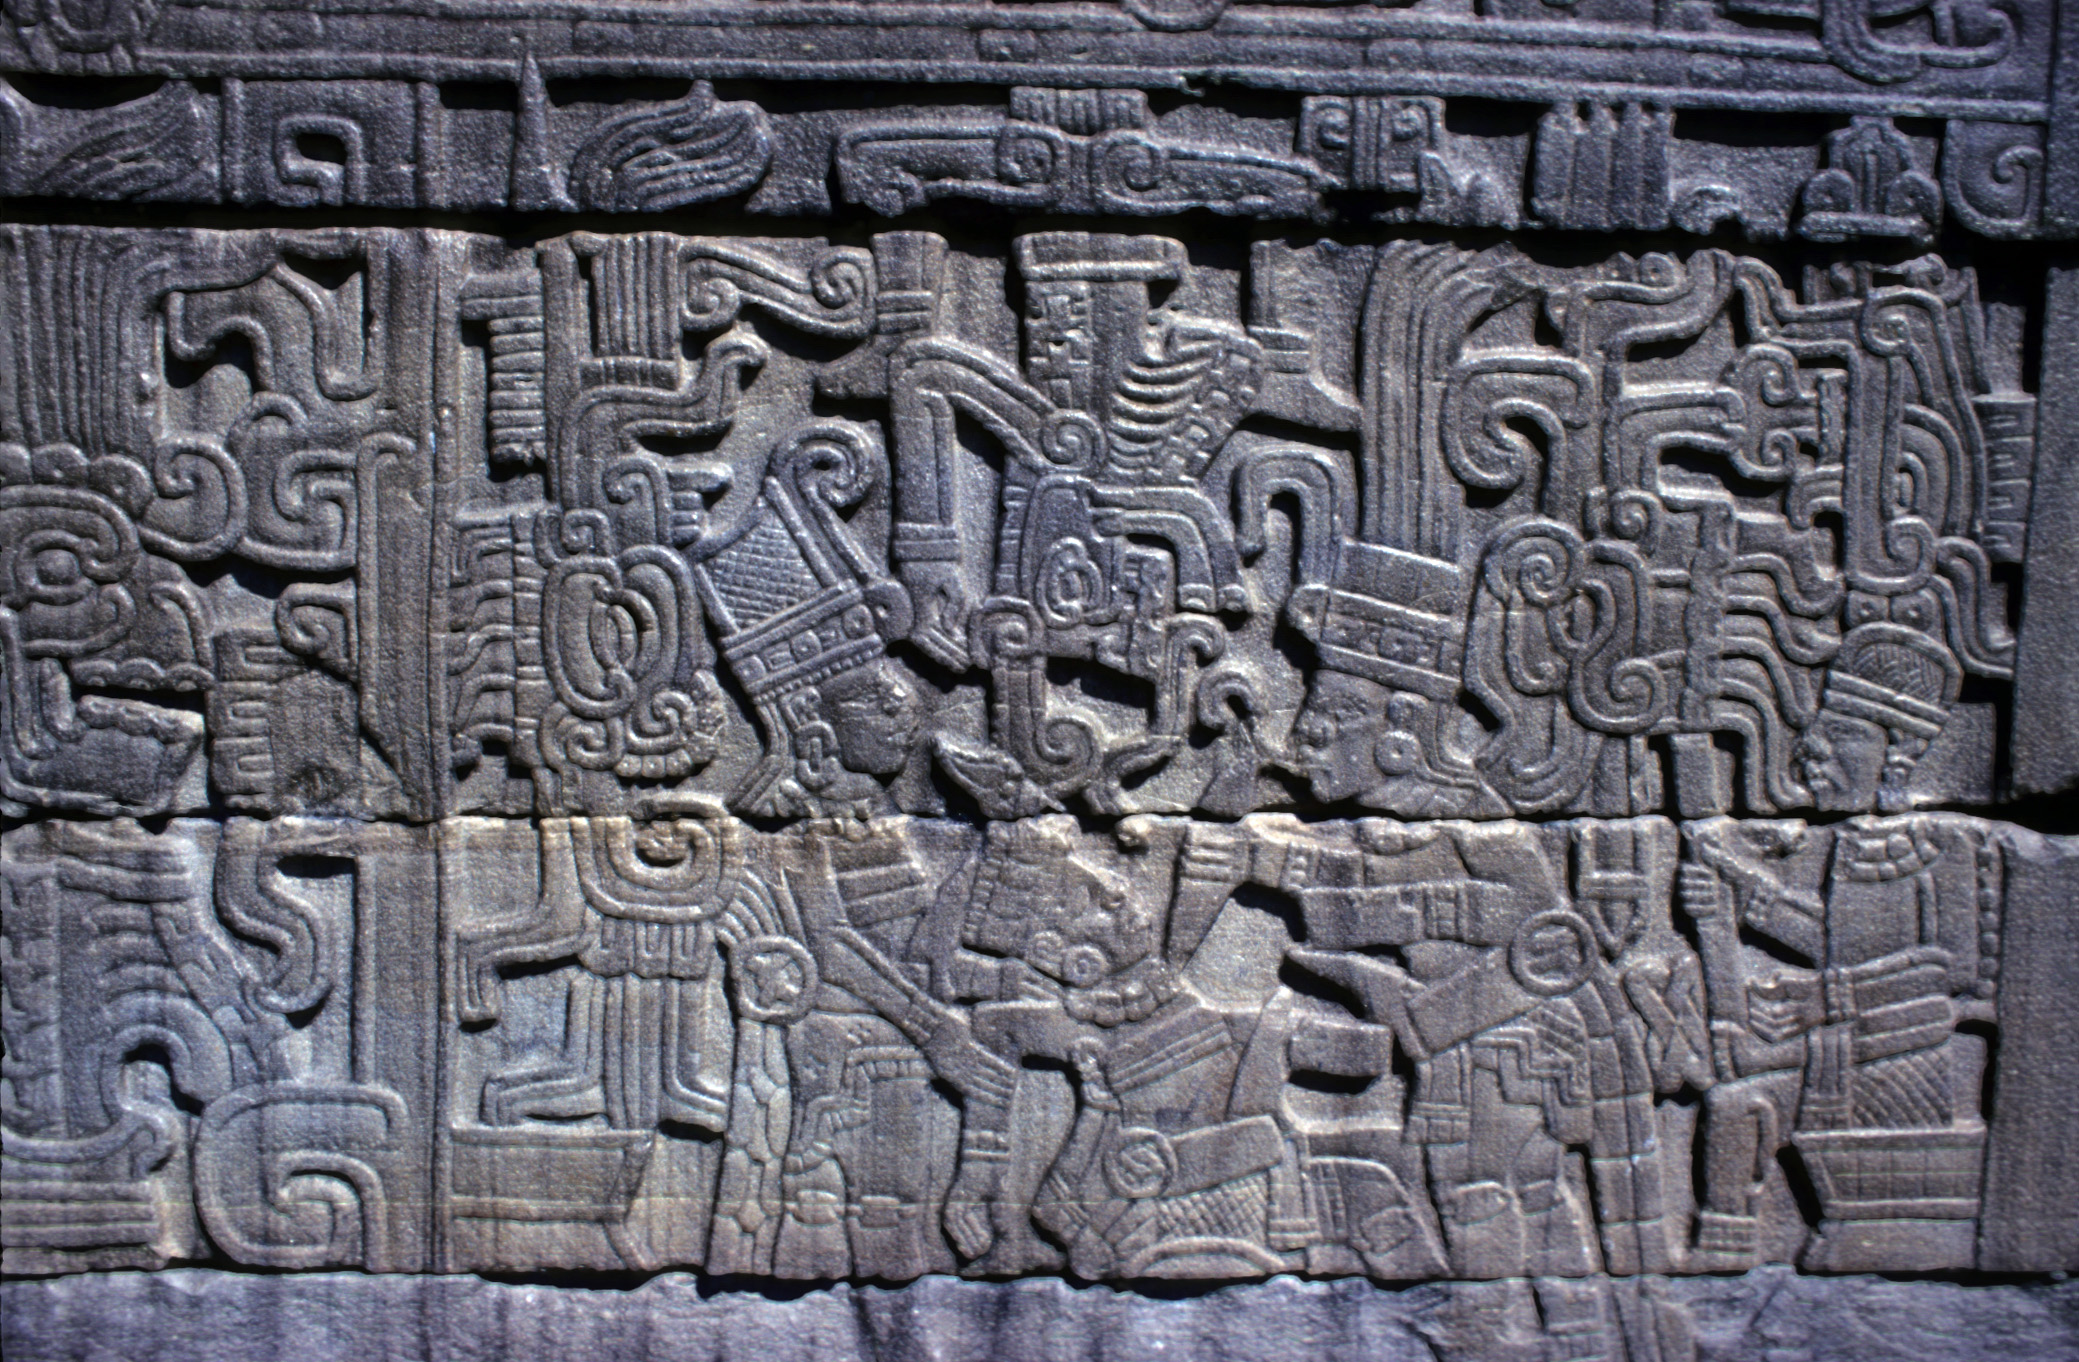 El Tajín: Balspel by Onbekende Artiest - ca. 600 CE 